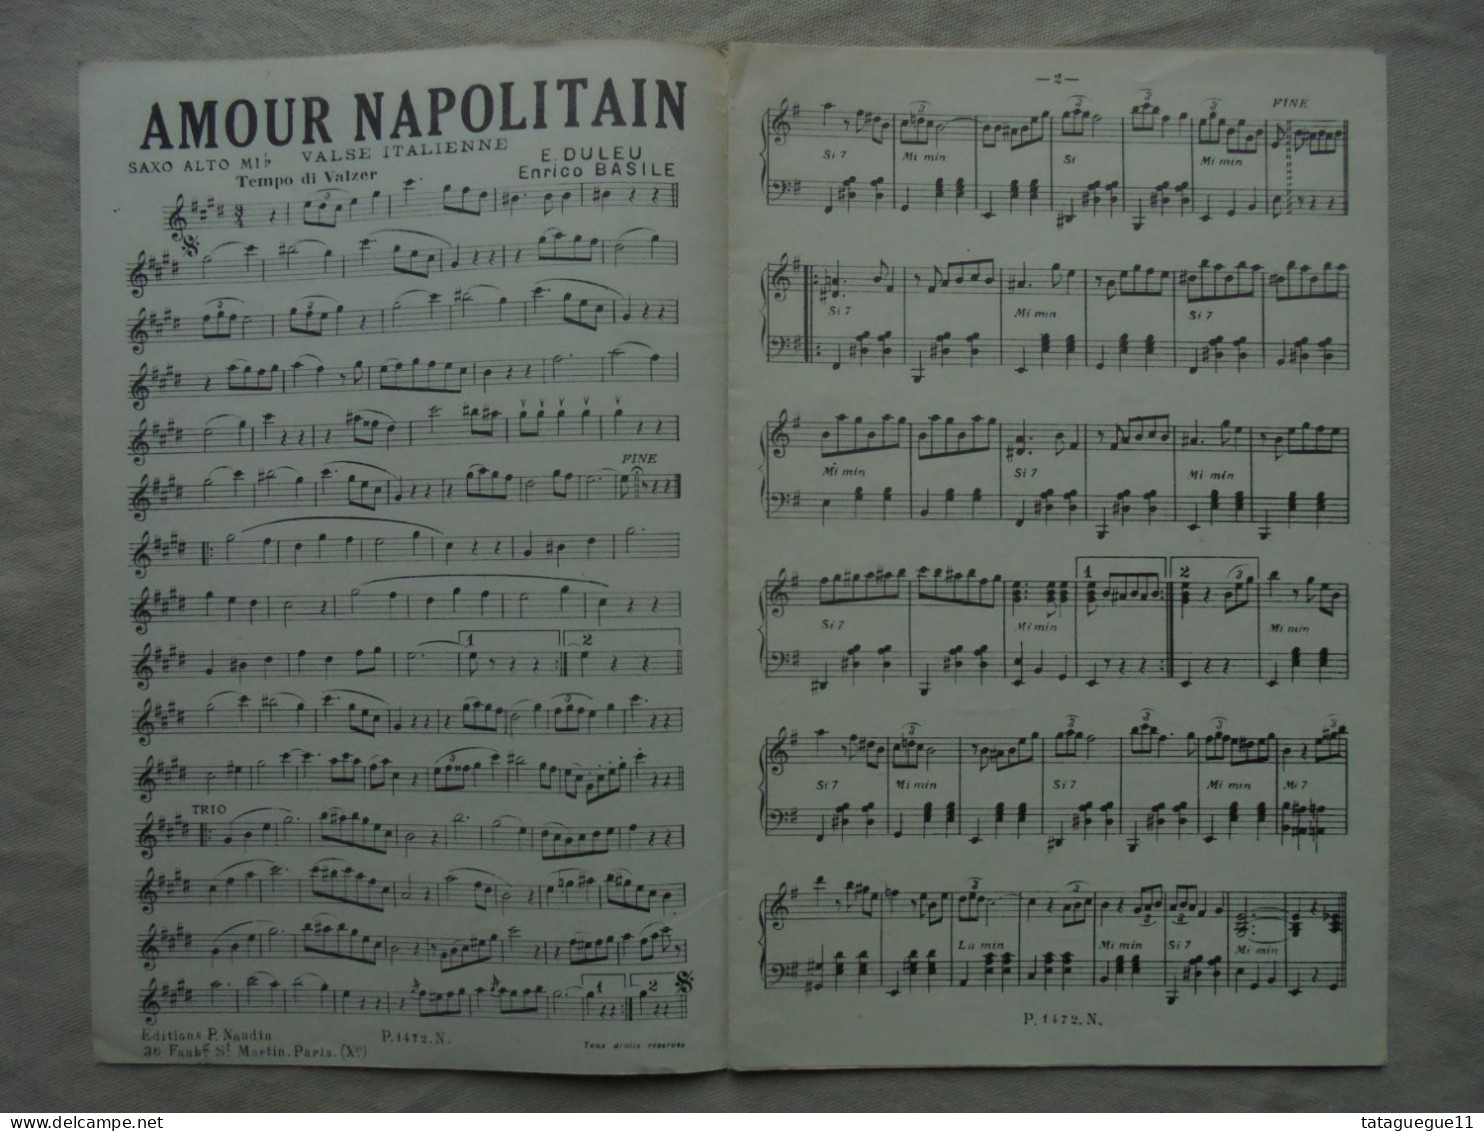 Ancien - Partition Amour Napolitain/Pluie D'étoilles E. Duleu - Liederbücher